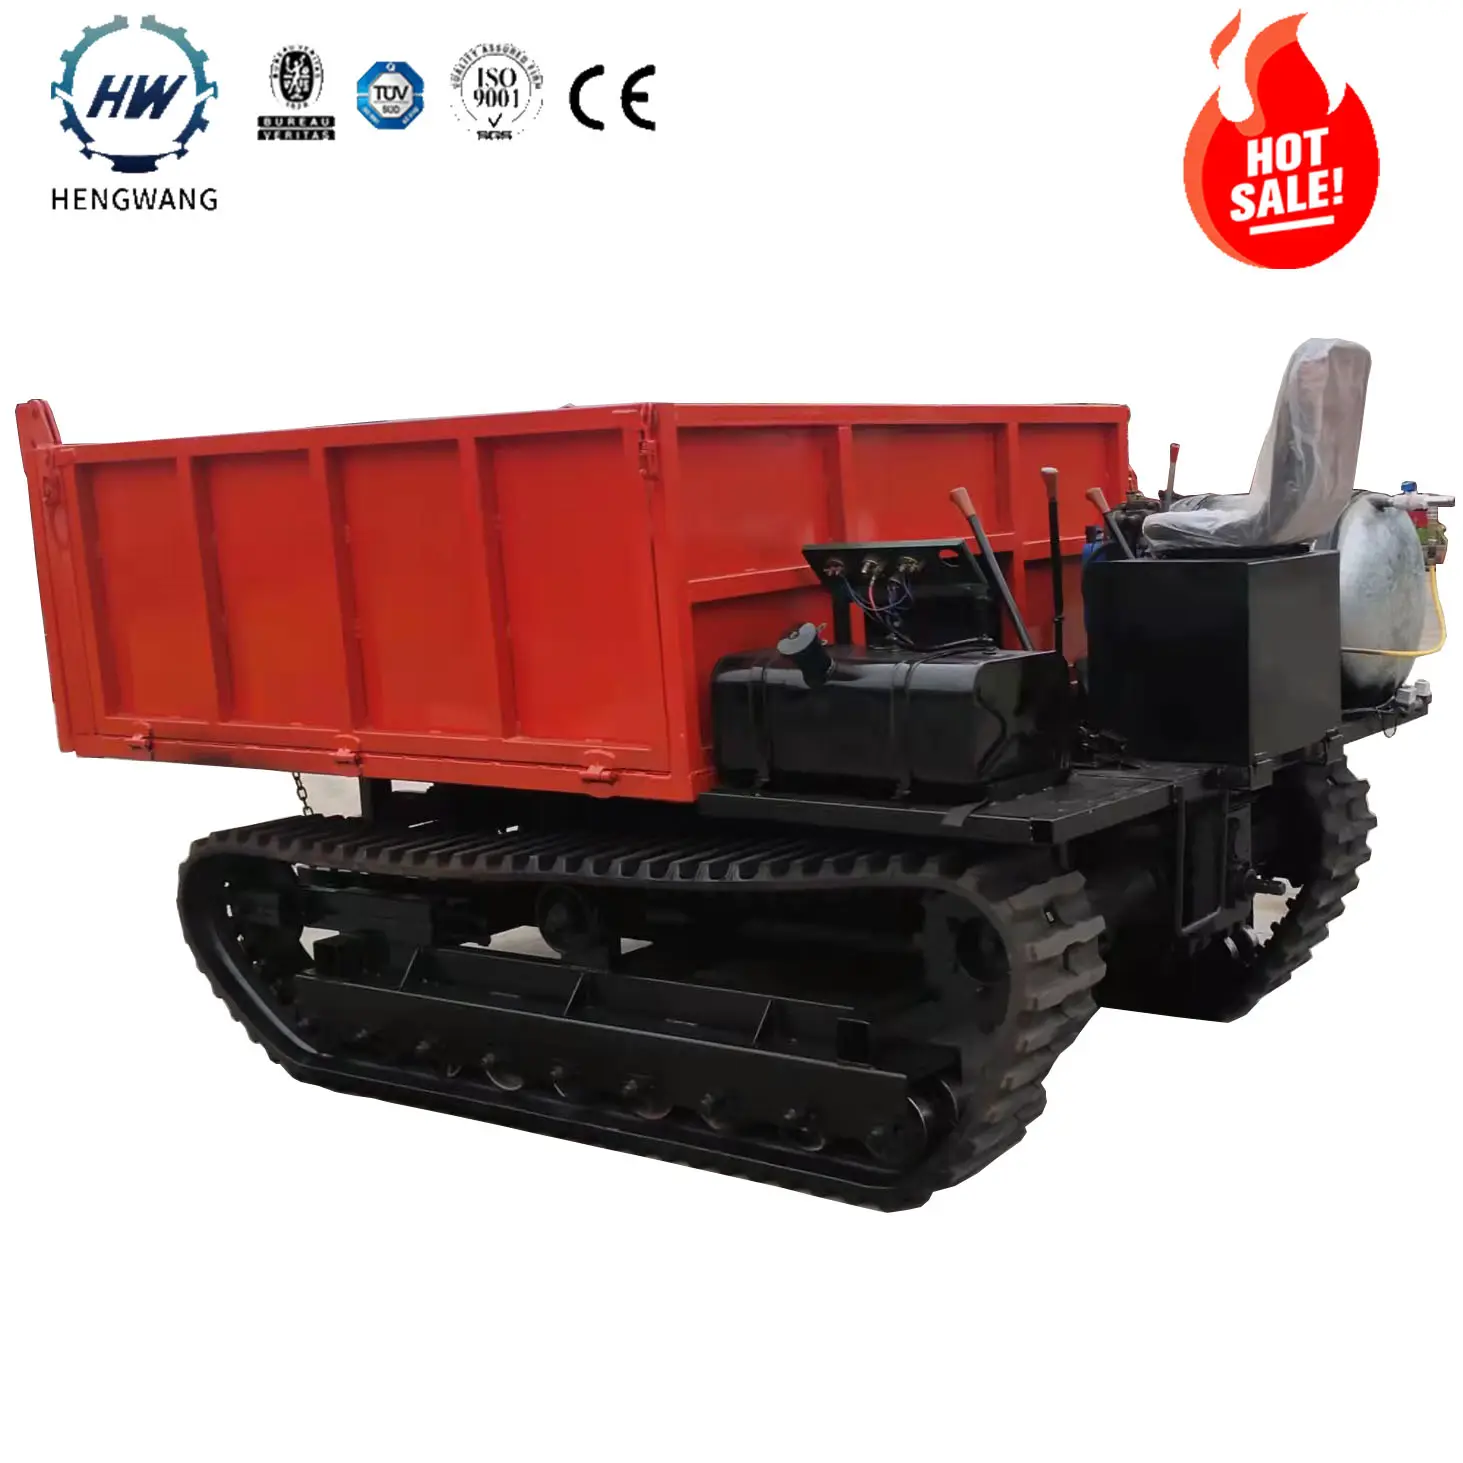 HW-5.0T 5000kgs डम्पर ट्रक रियर सीट वाहन 5ton Multifunctional क्रॉलर डम्पर ट्रक